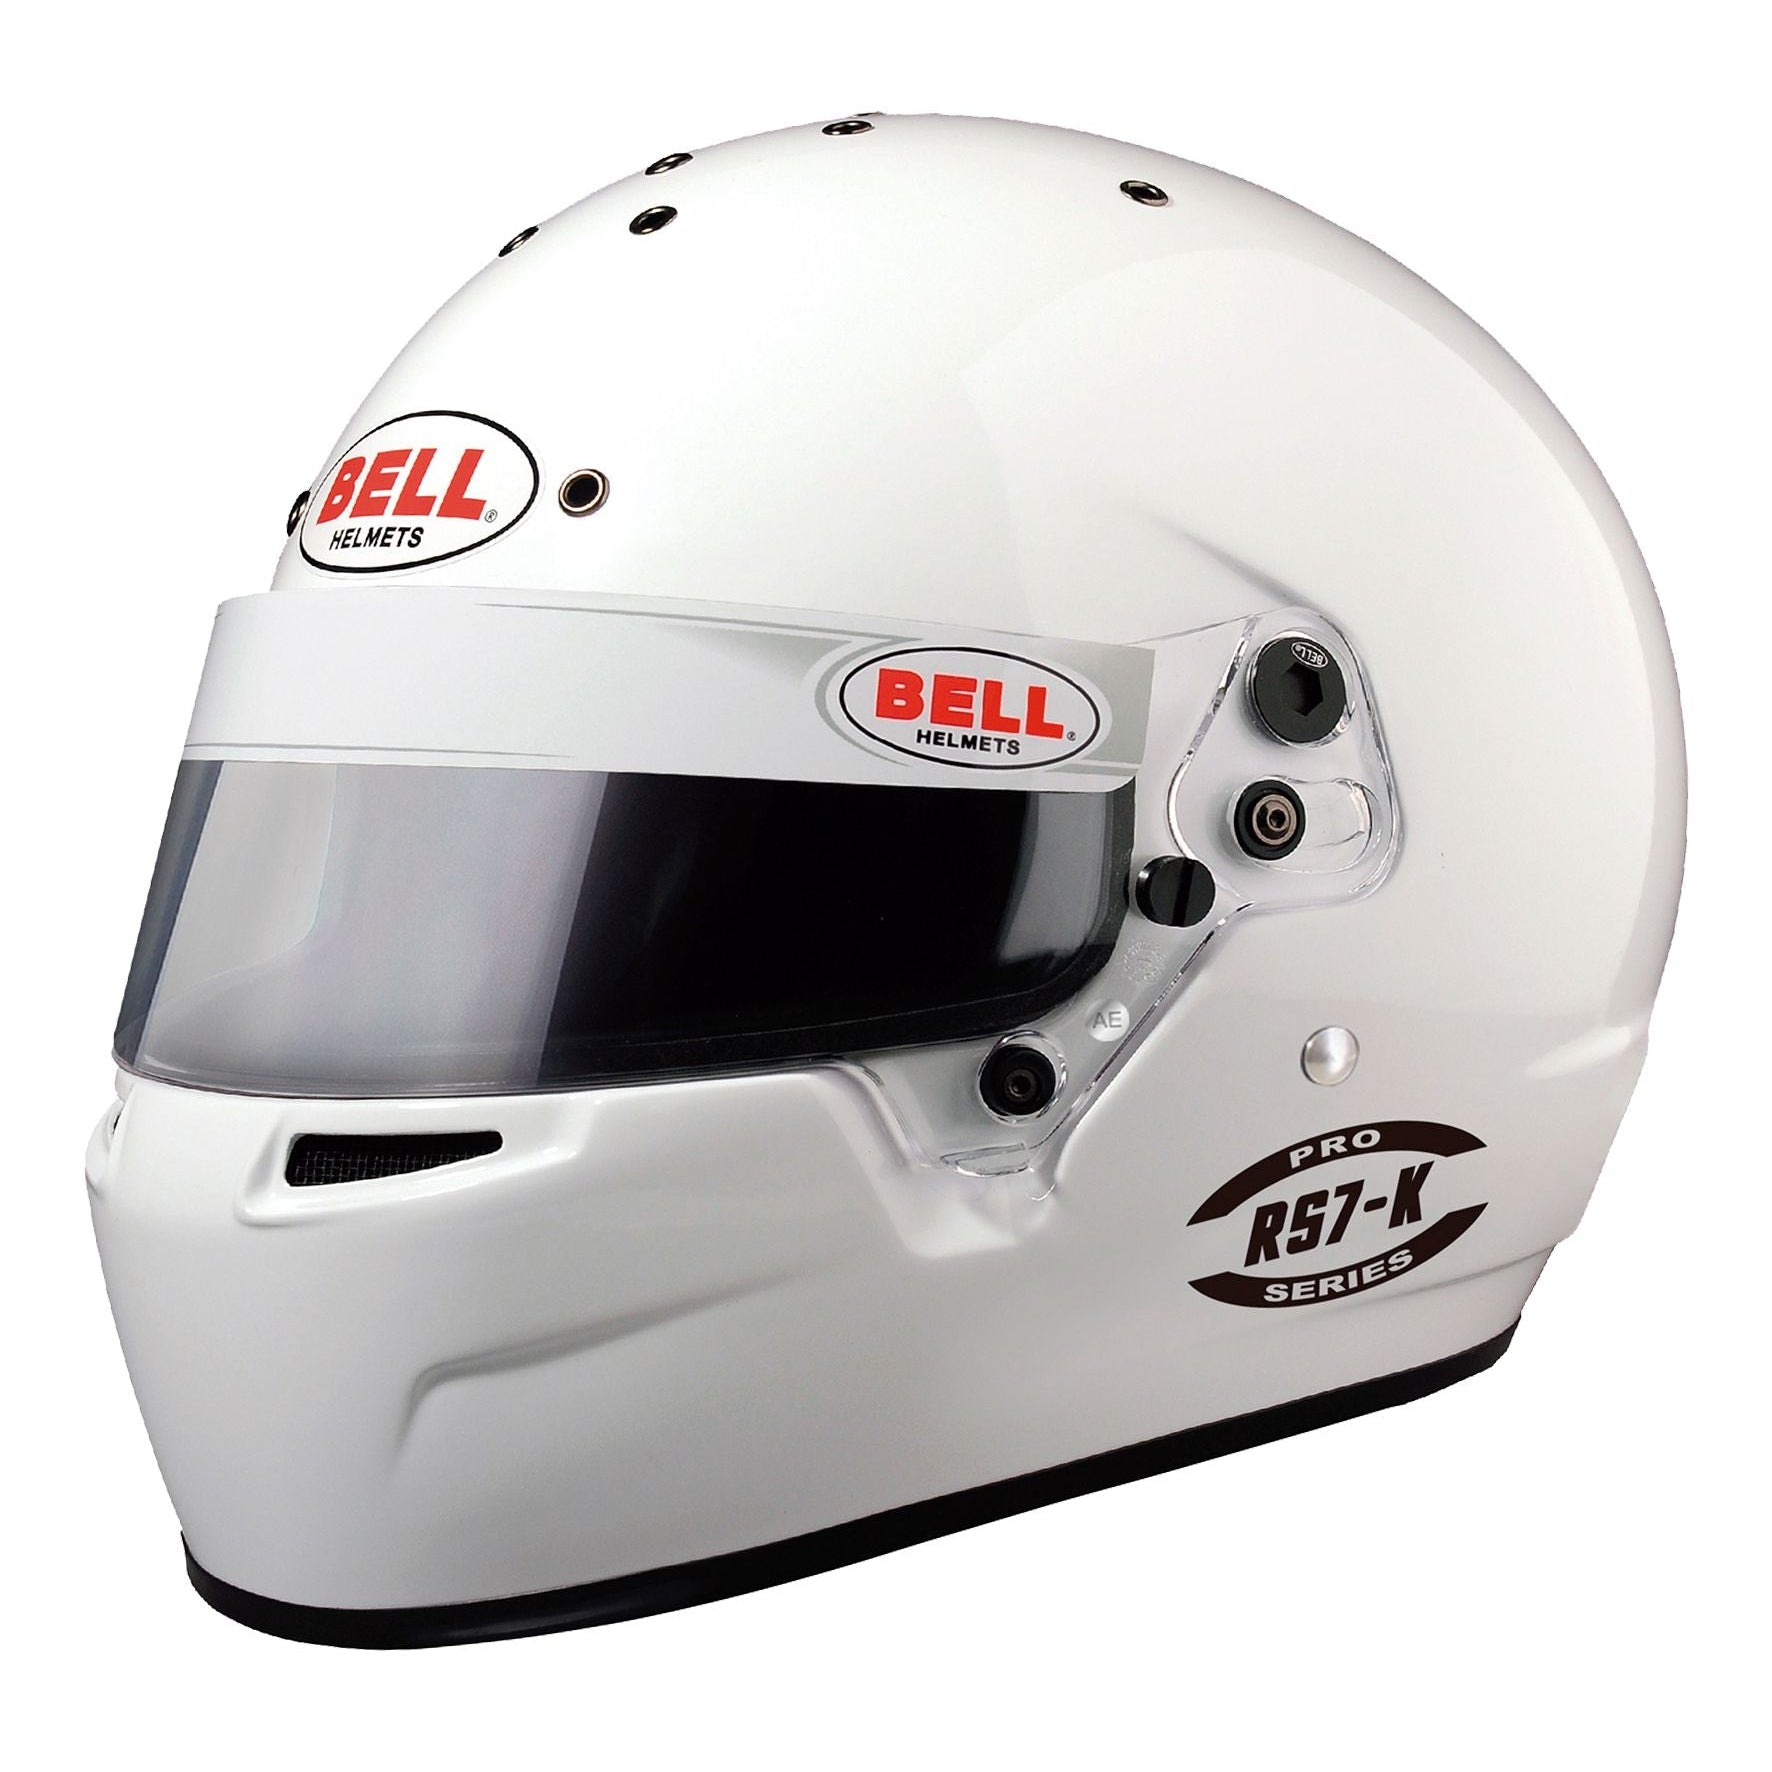 Bell RS7-K Helmet - Saferacer